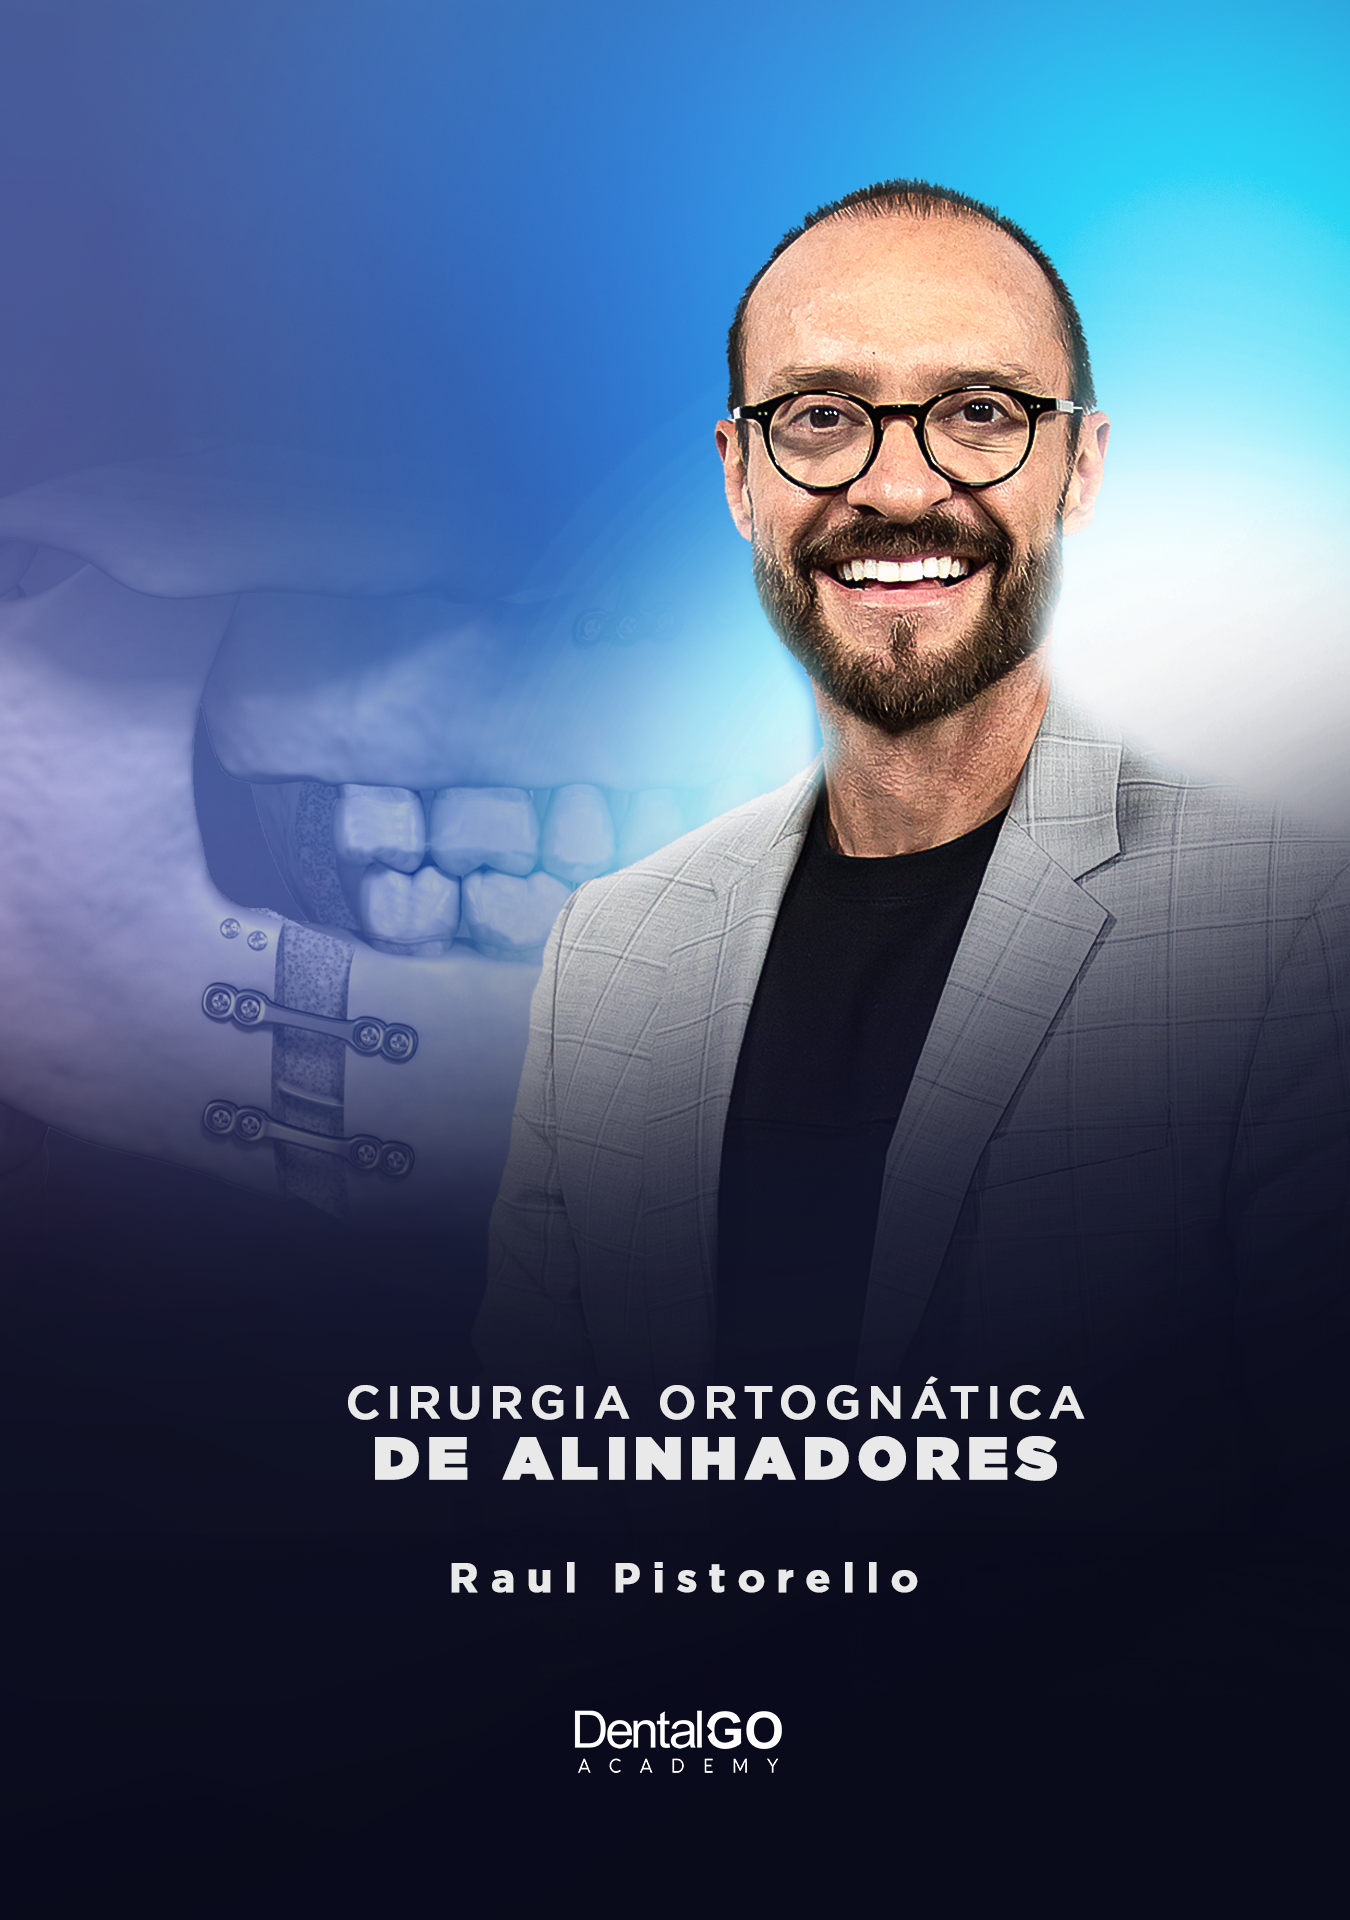 Cirurgia Ortognática e Alinhadores - Raul Pistorello